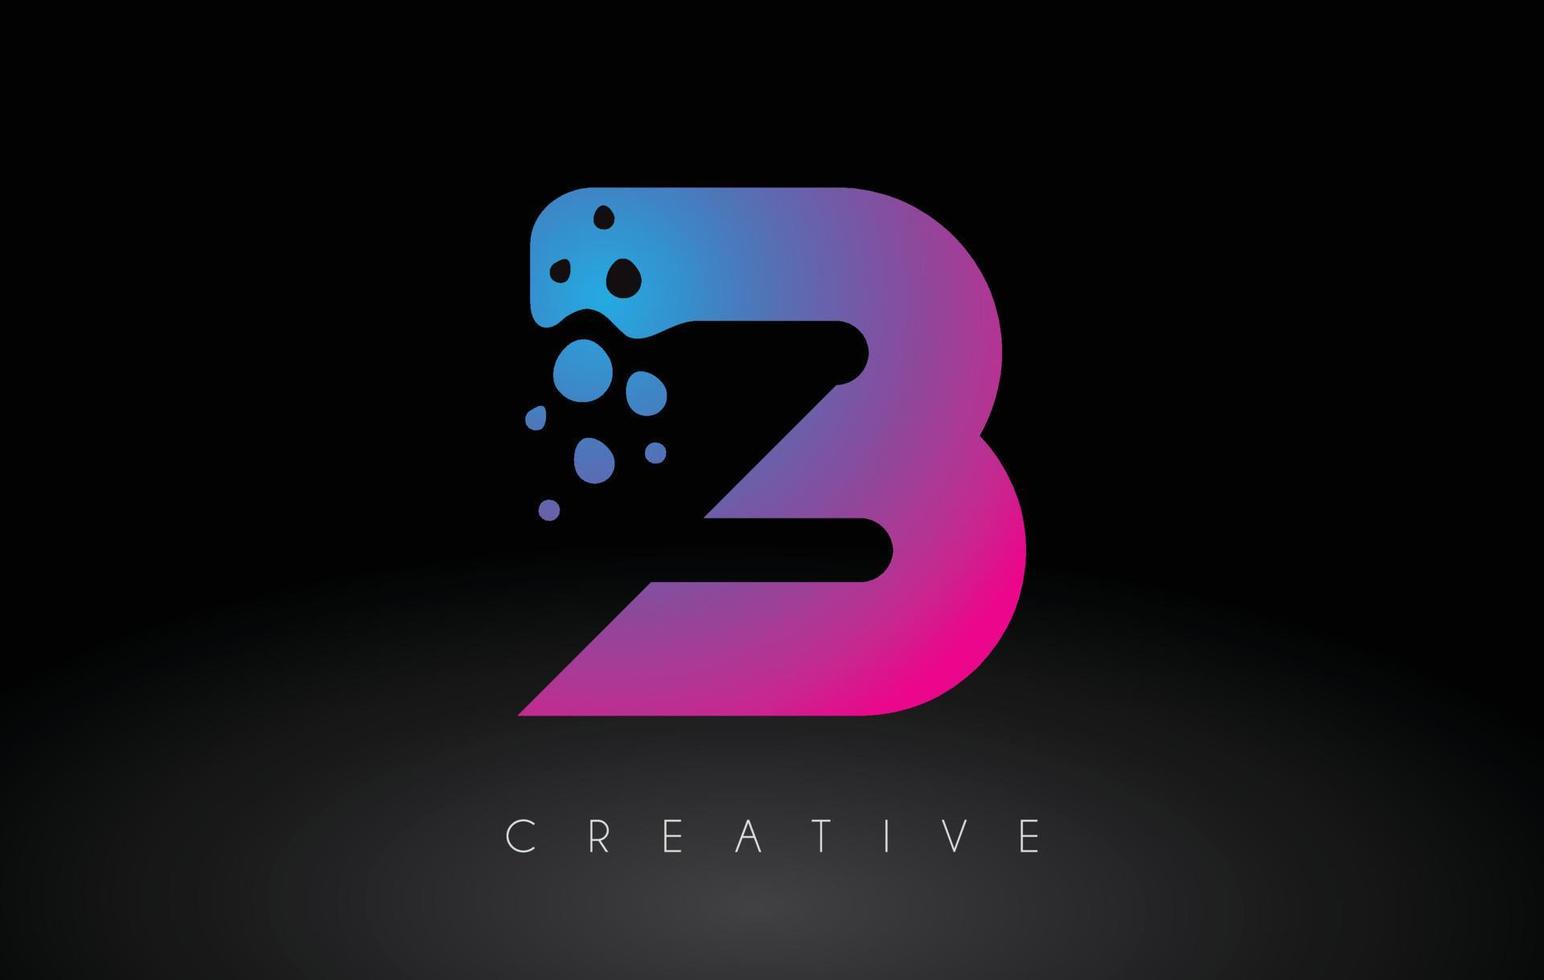 diseño de logotipo de letra b puntos con burbuja artística creativa cortada en vector de colores azul púrpura